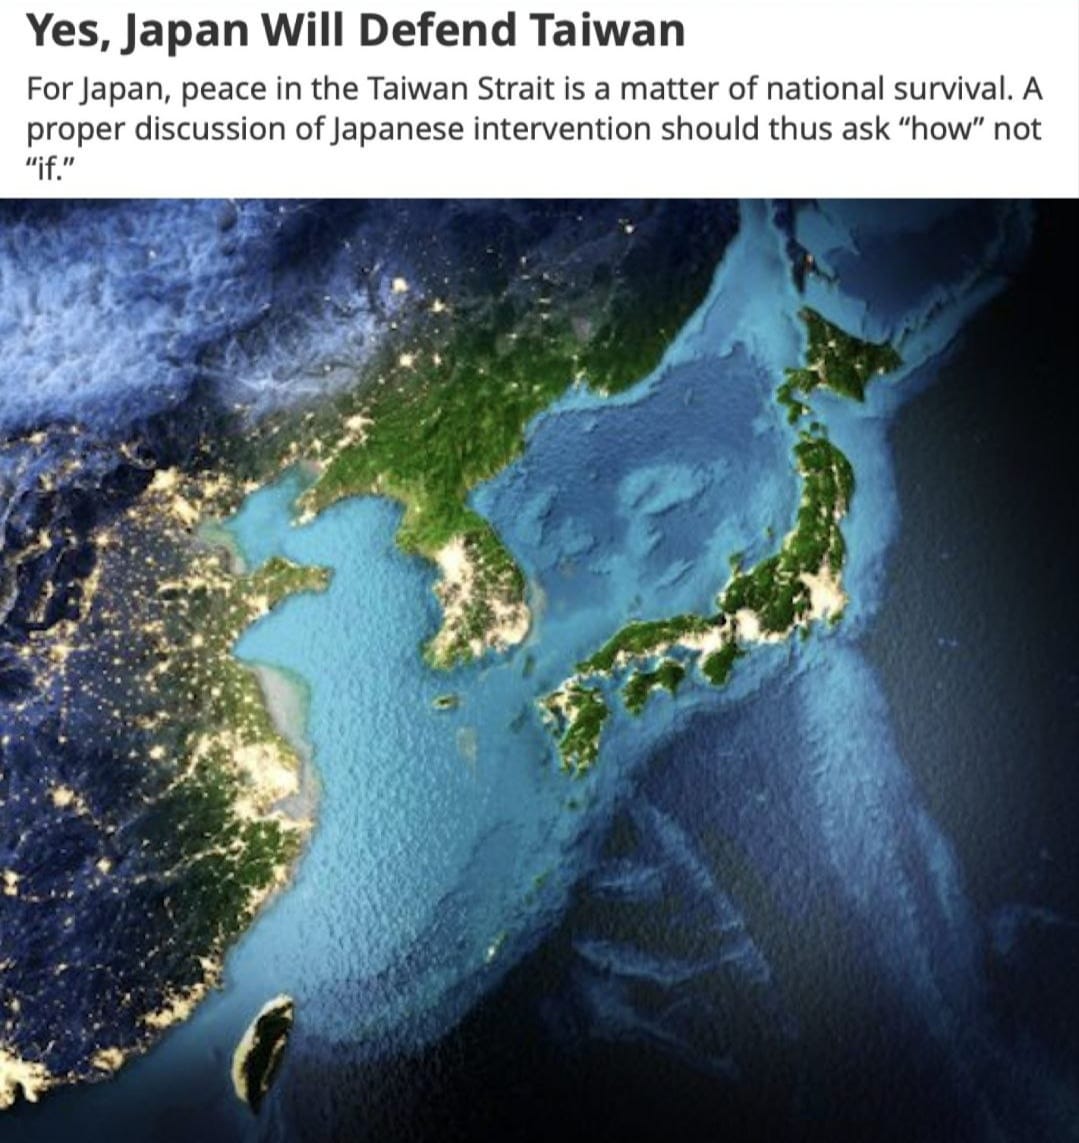 《外交家》報導一篇「是的，日本會防衛台灣」文章，內容表示，對日本來說，台海和平事關國家存亡。因此，對日本干預的正確討論應該問「如何」(How)而不是「如果」(If)